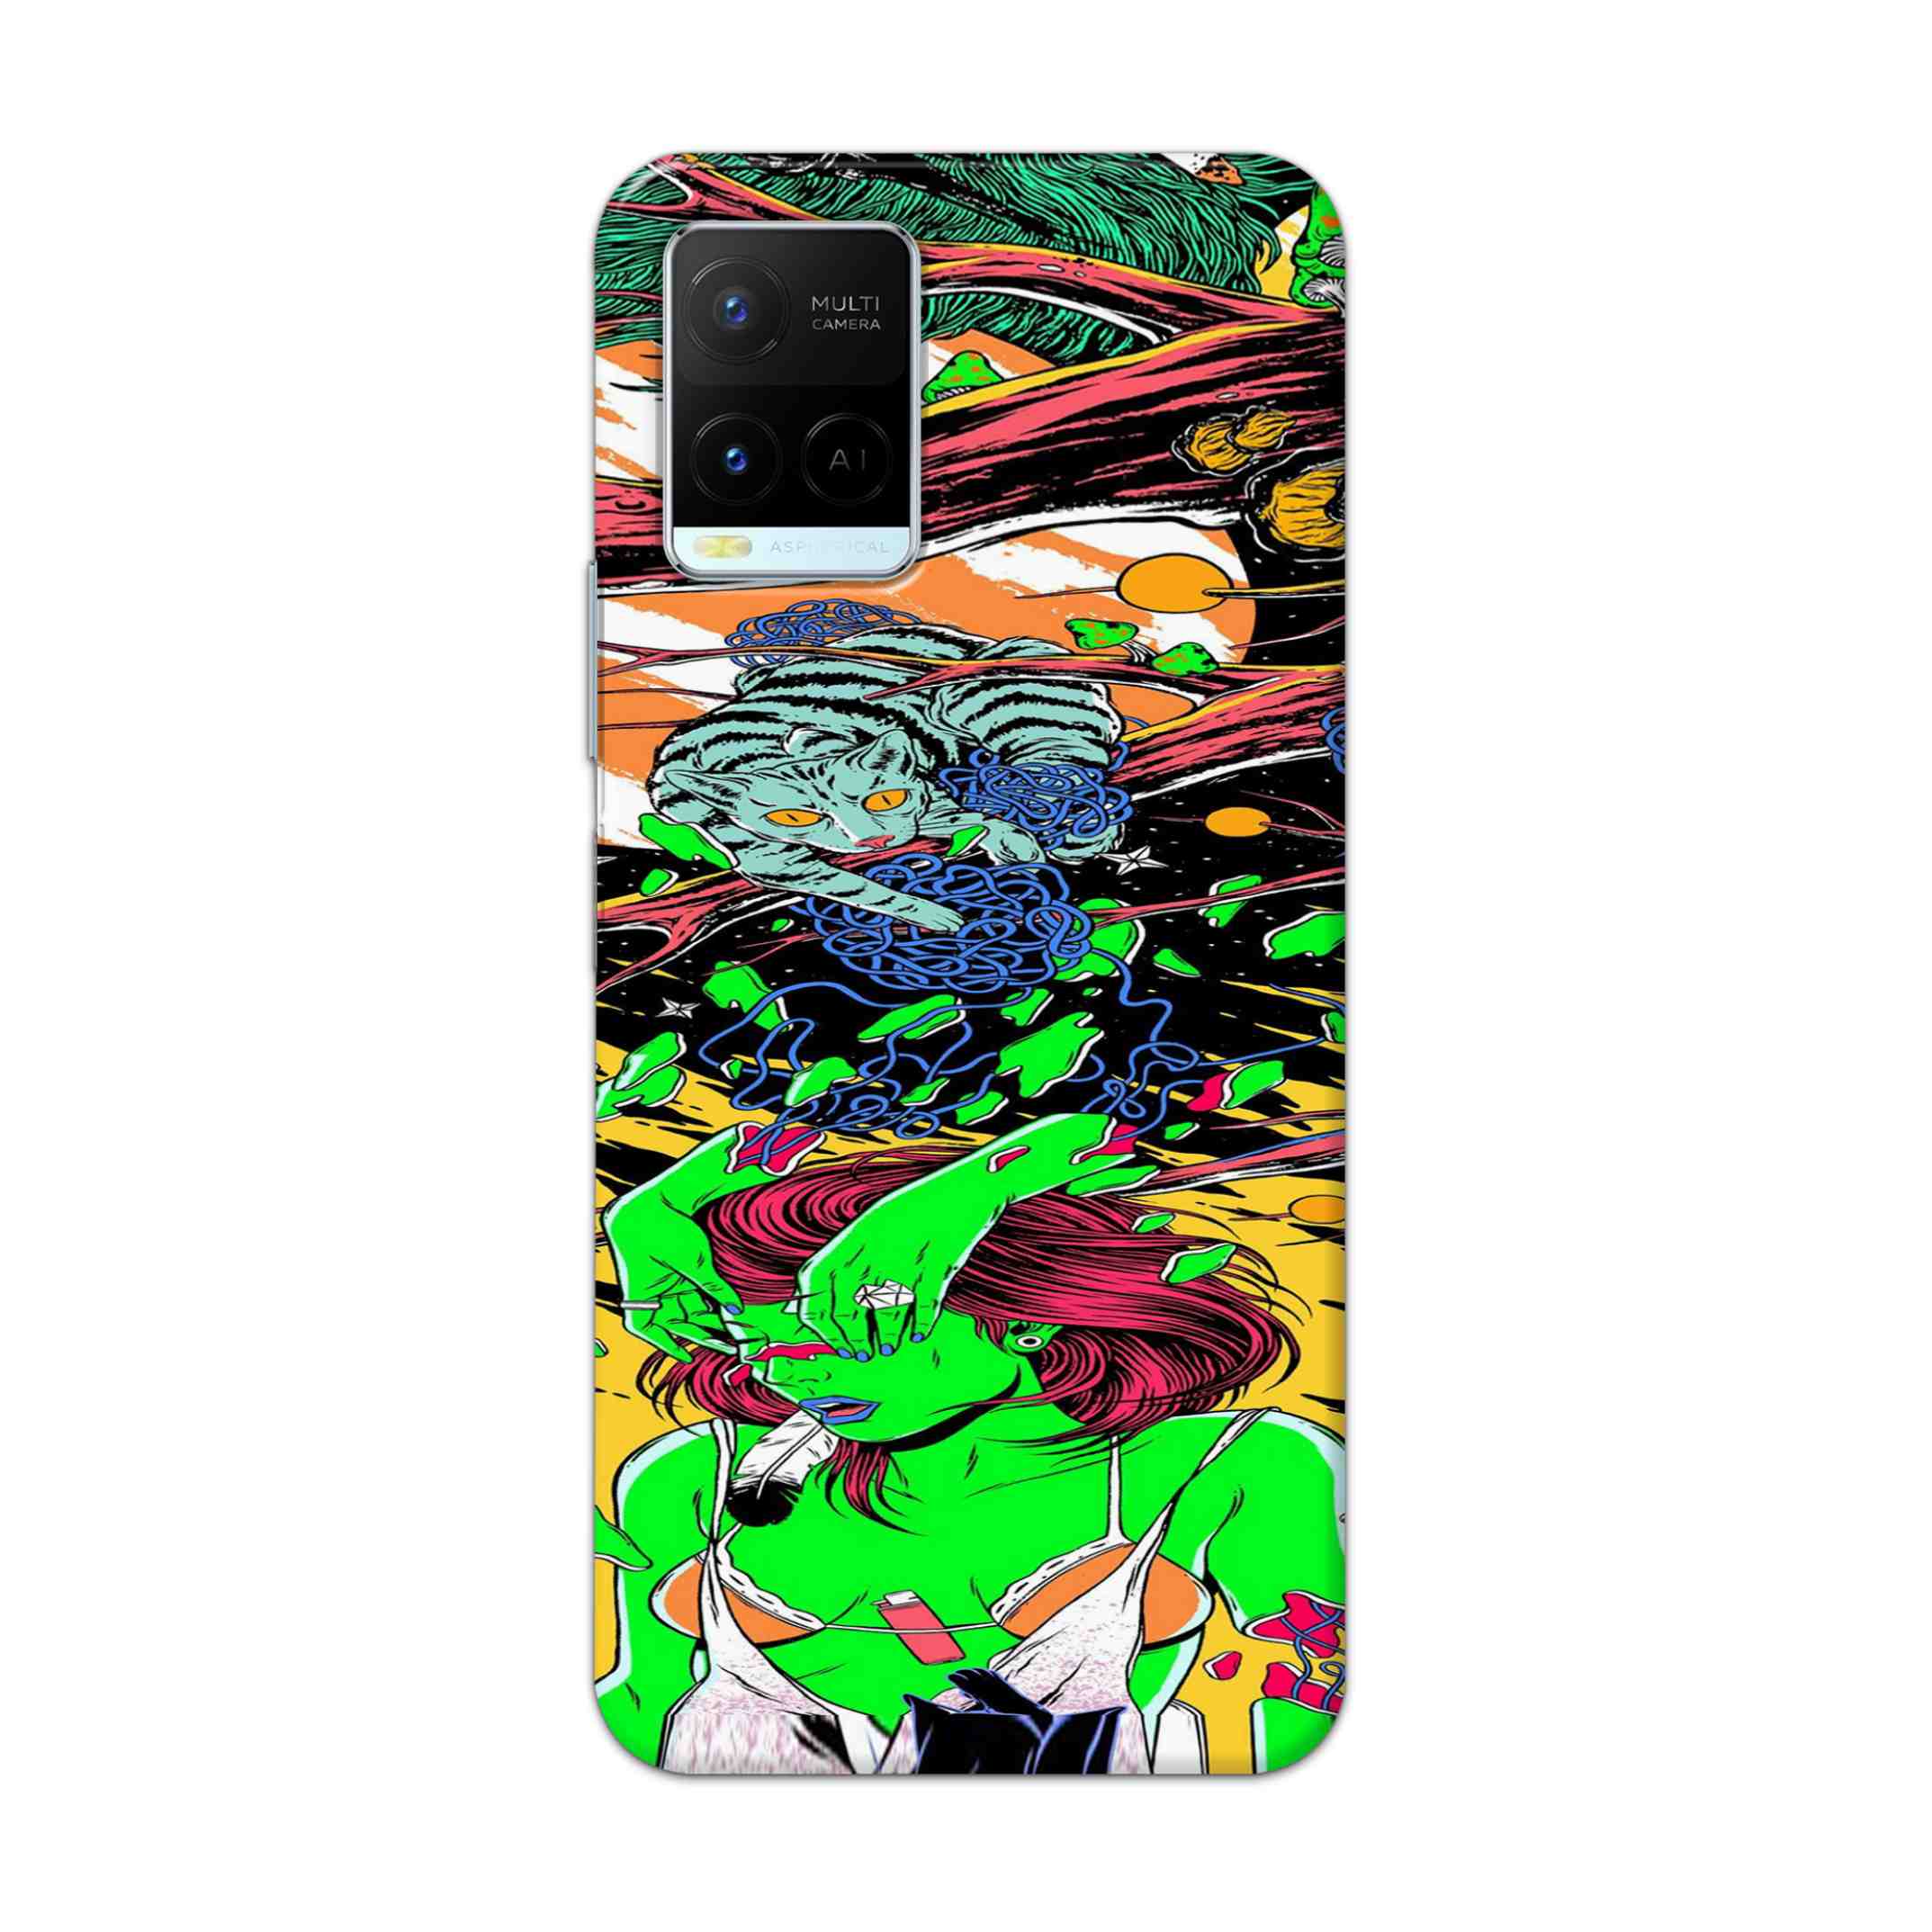 Buy Green Girl Art Hard Back Mobile Phone Case Cover For Vivo Y21 2021 Online